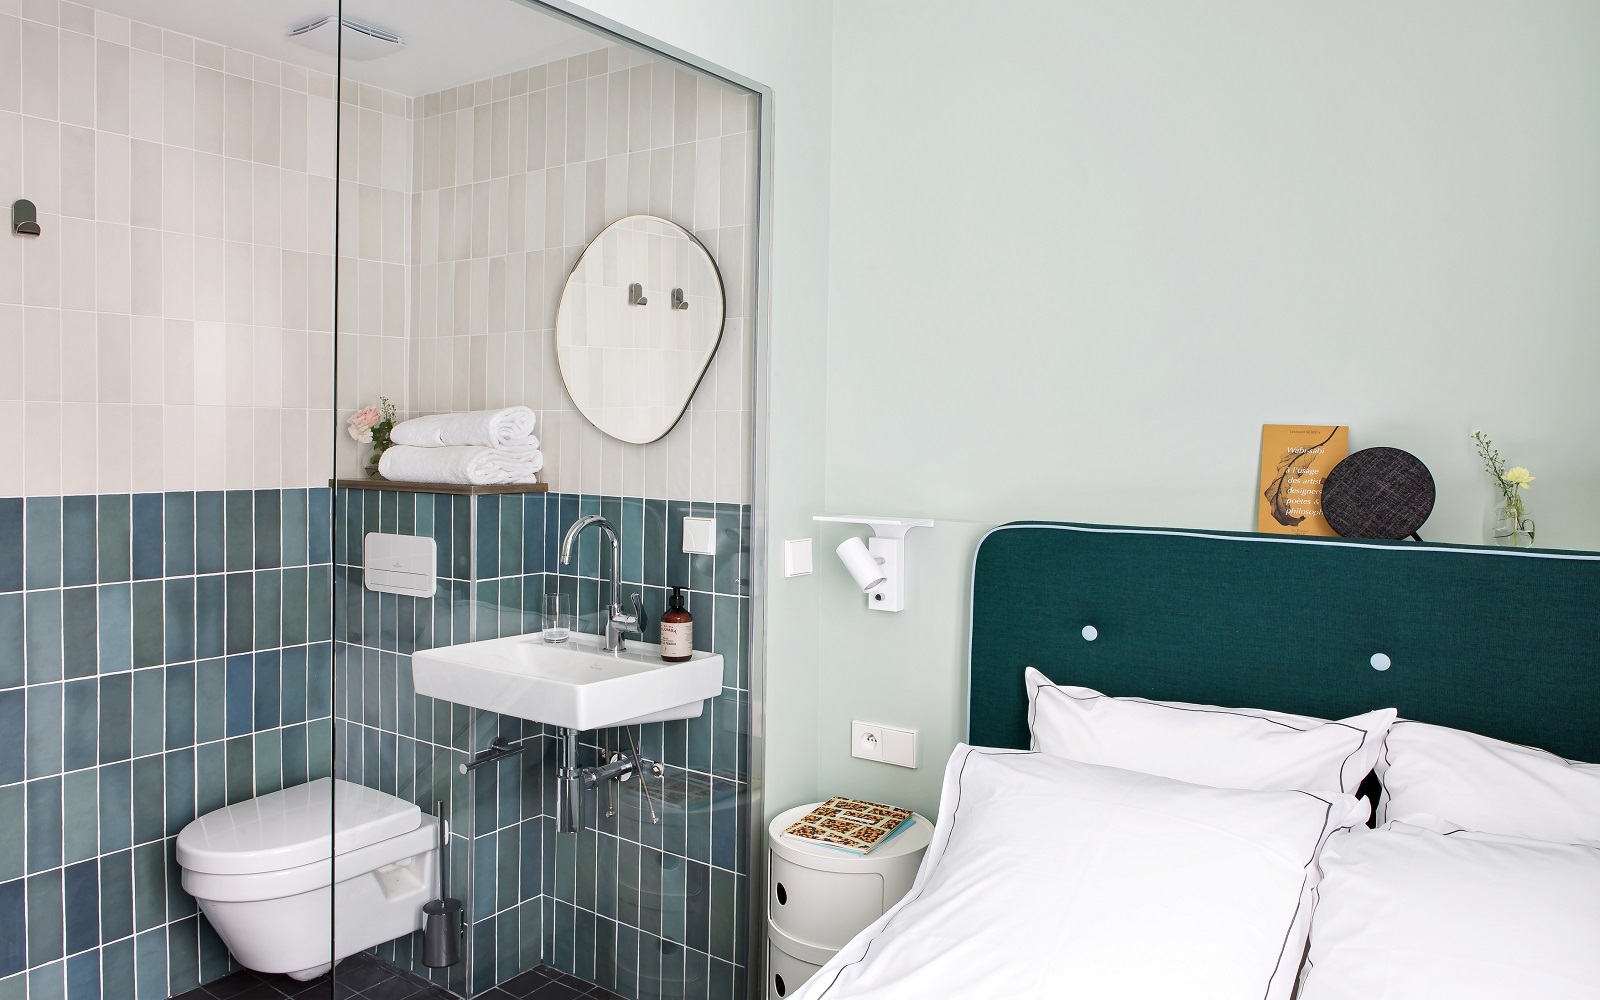 Villeroy & Boch products in bathroom at Hotel Ami in Paris